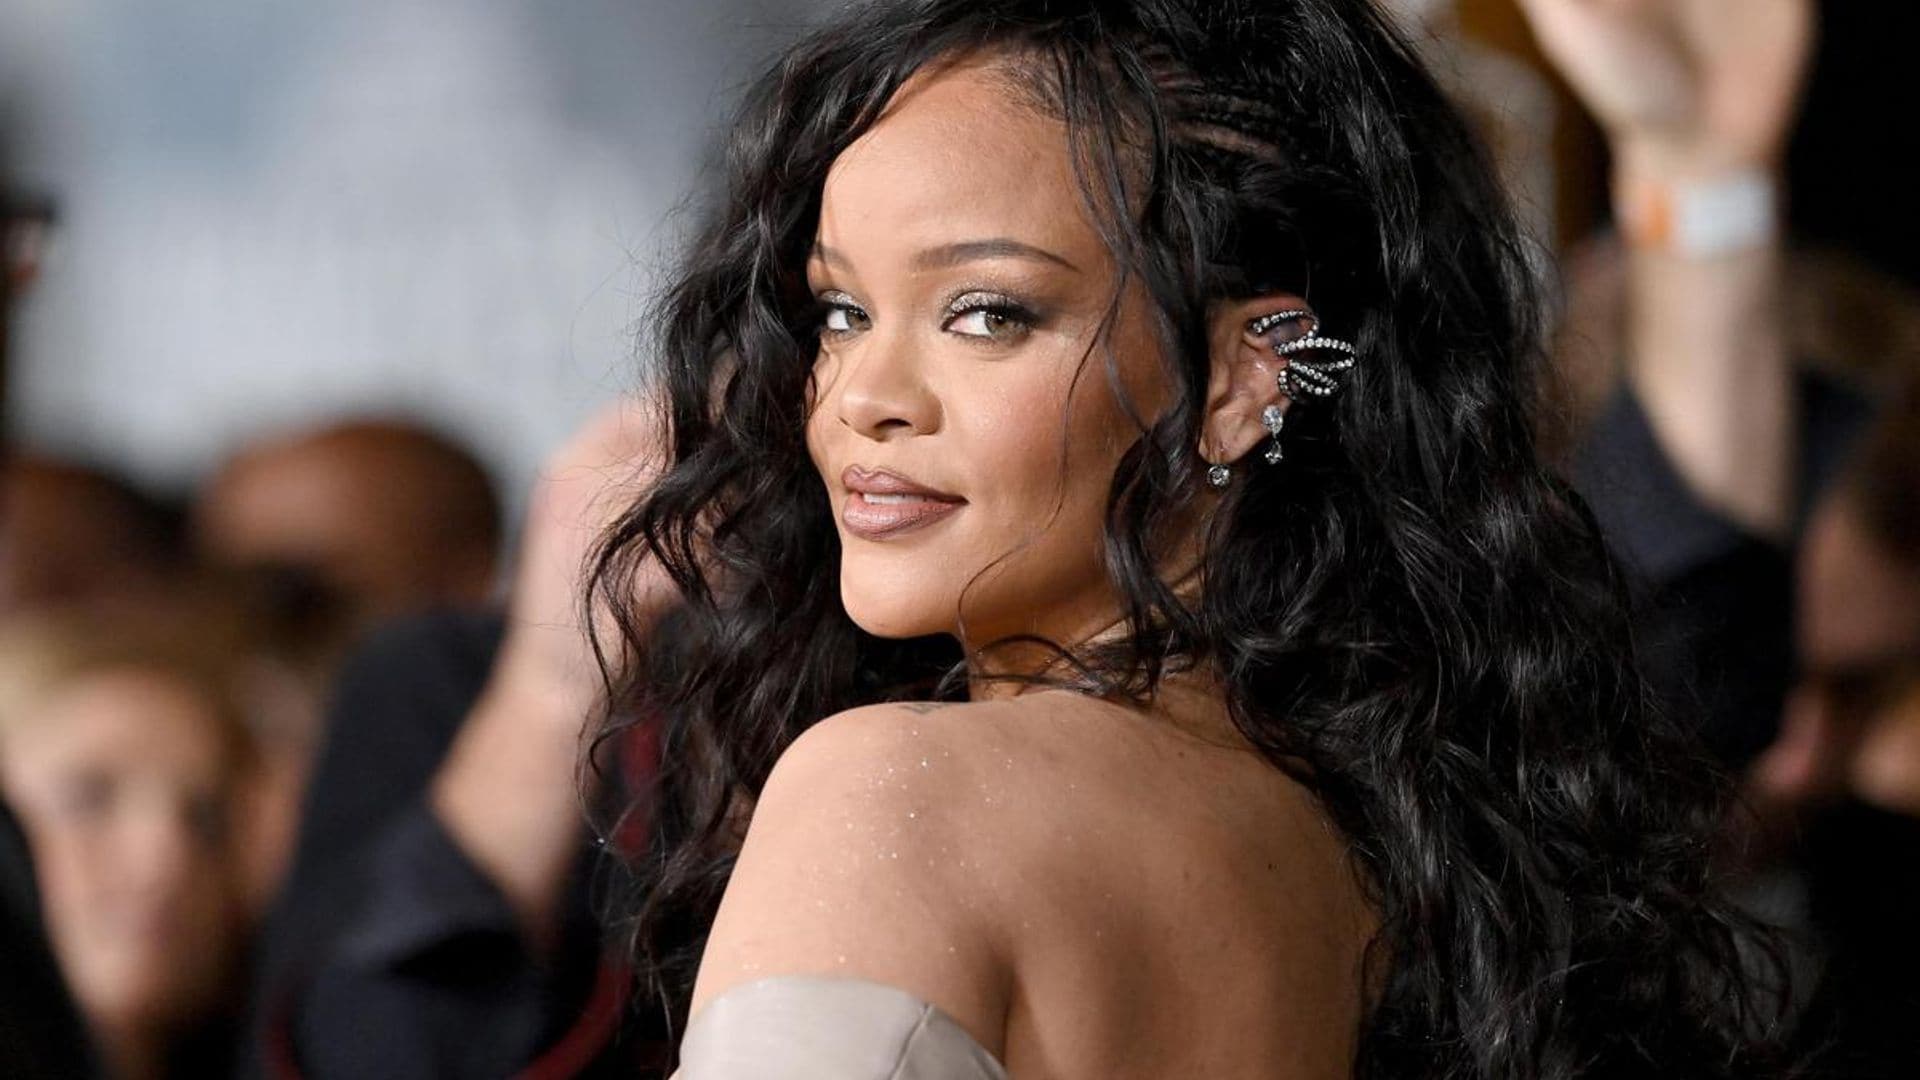 Rihanna will perform at the 2023 Oscars